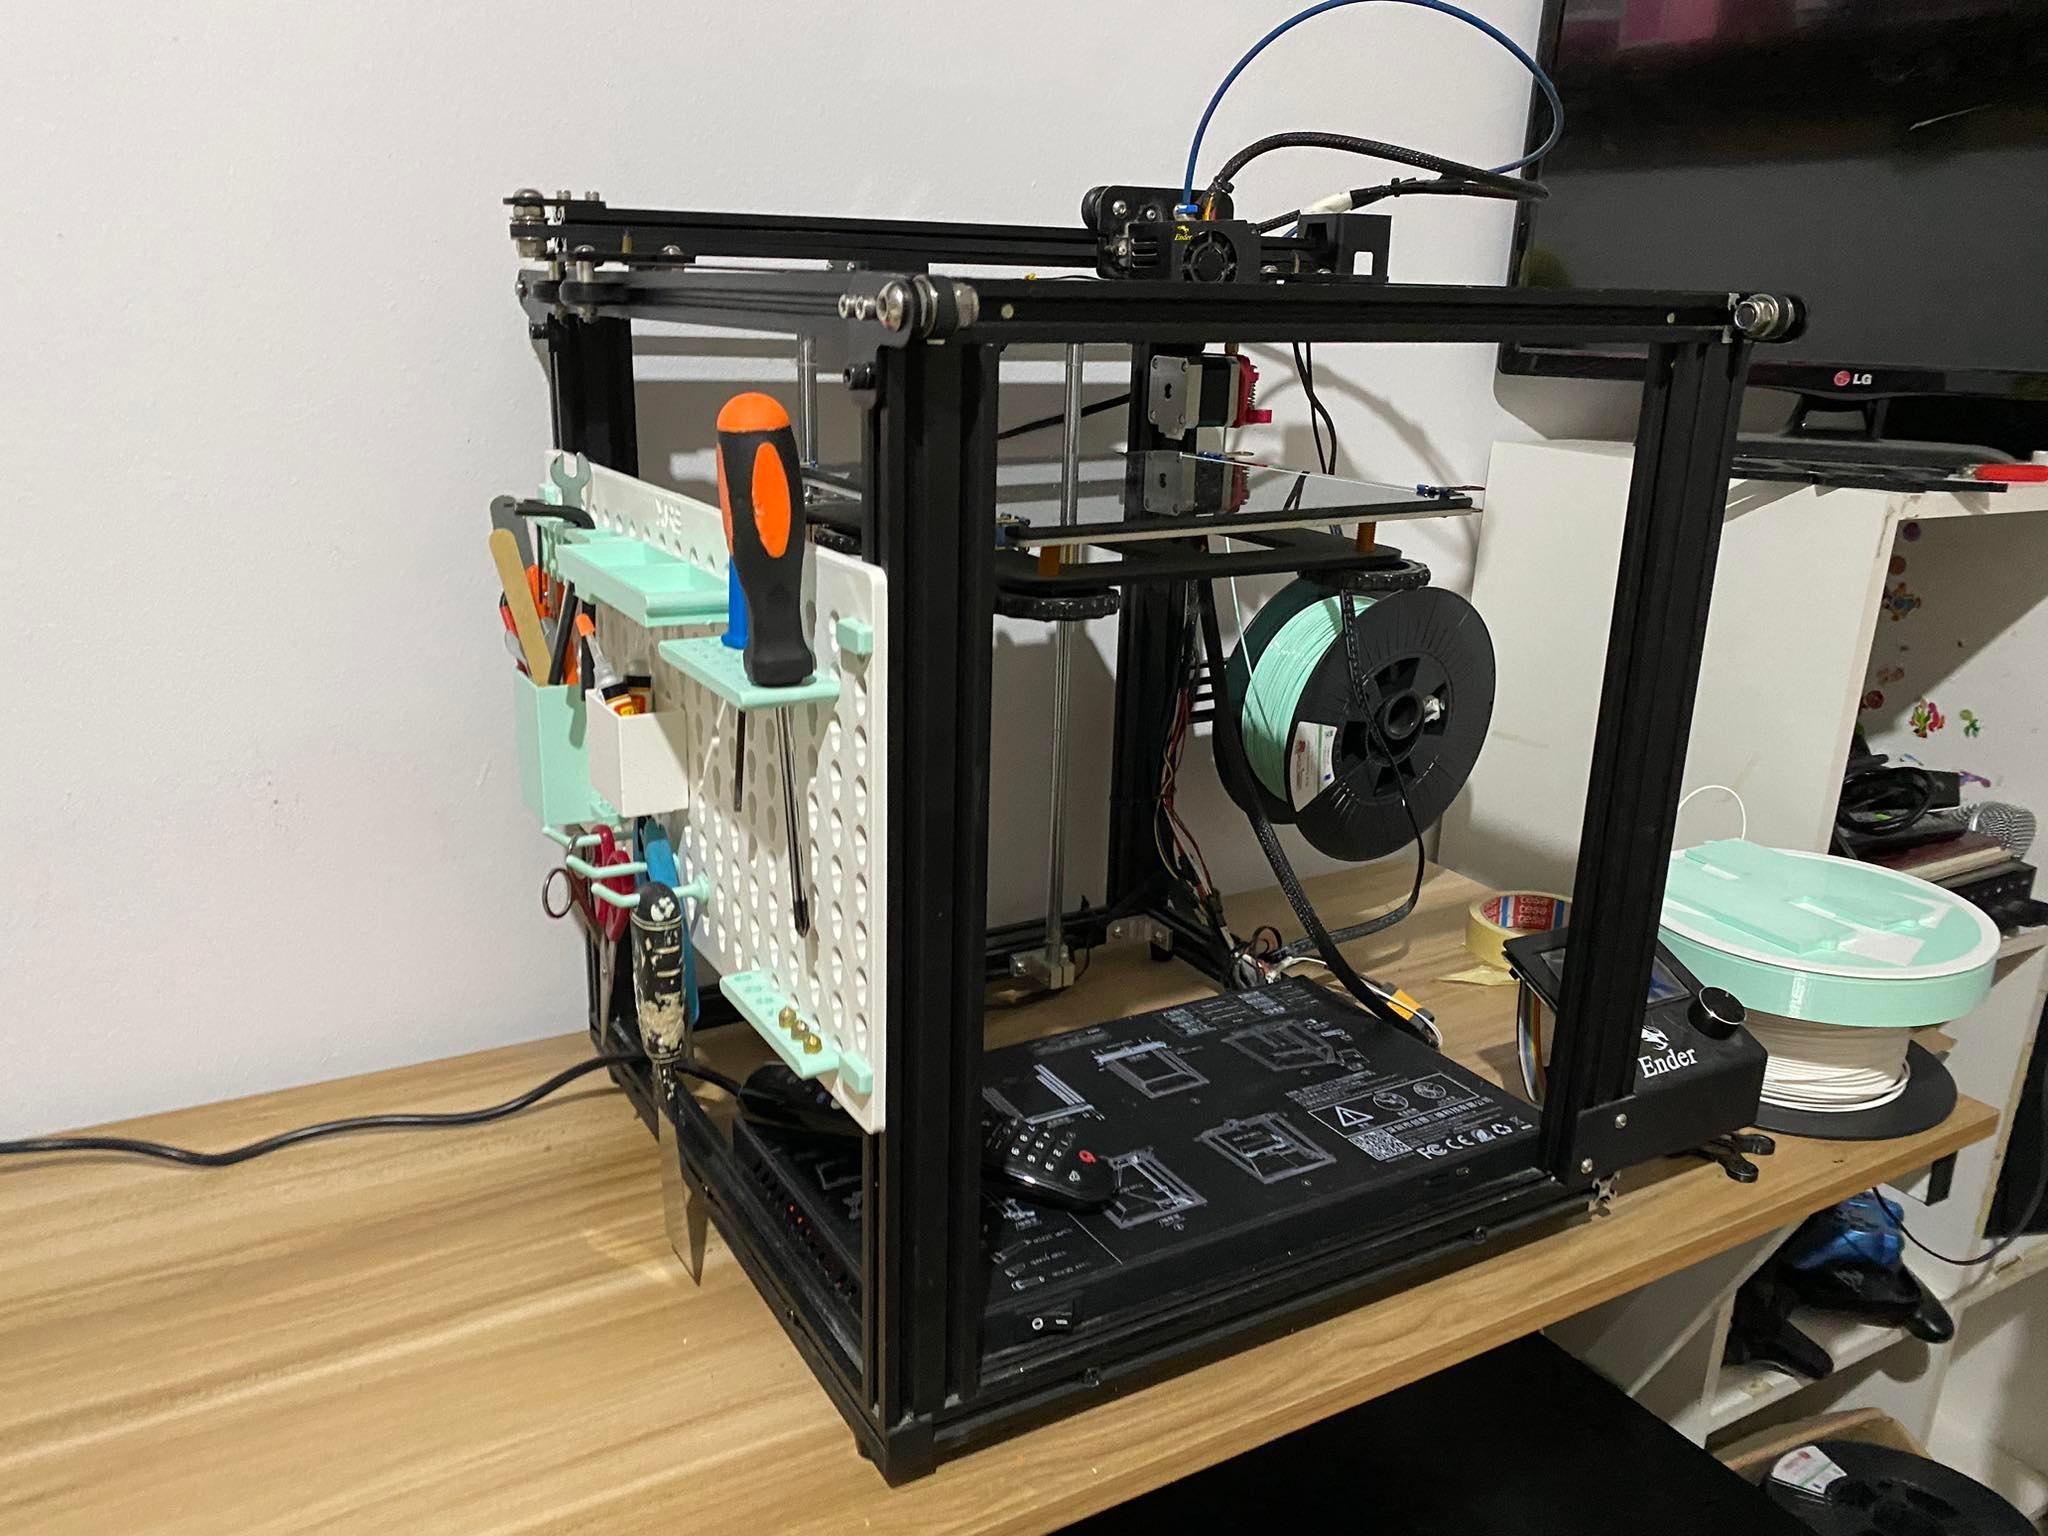 Tool Rack For 3D Printer 3d model